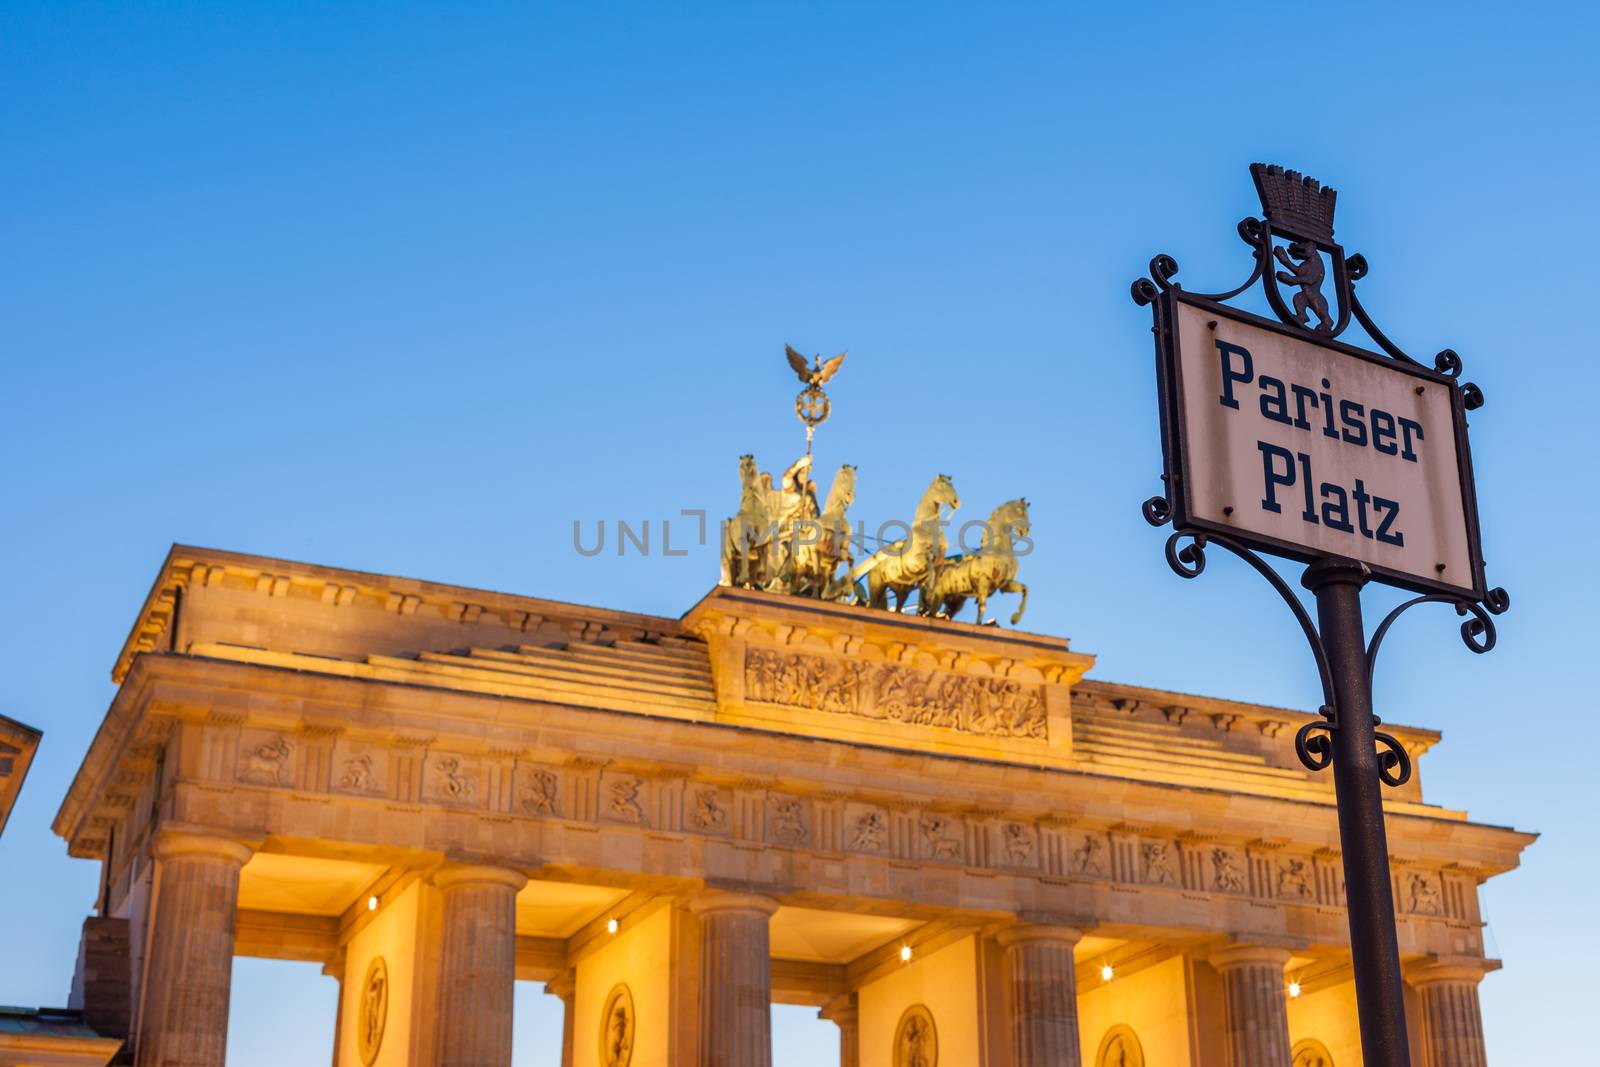 Pariser Platz sign, Berlin Brandenburg Gate by edan